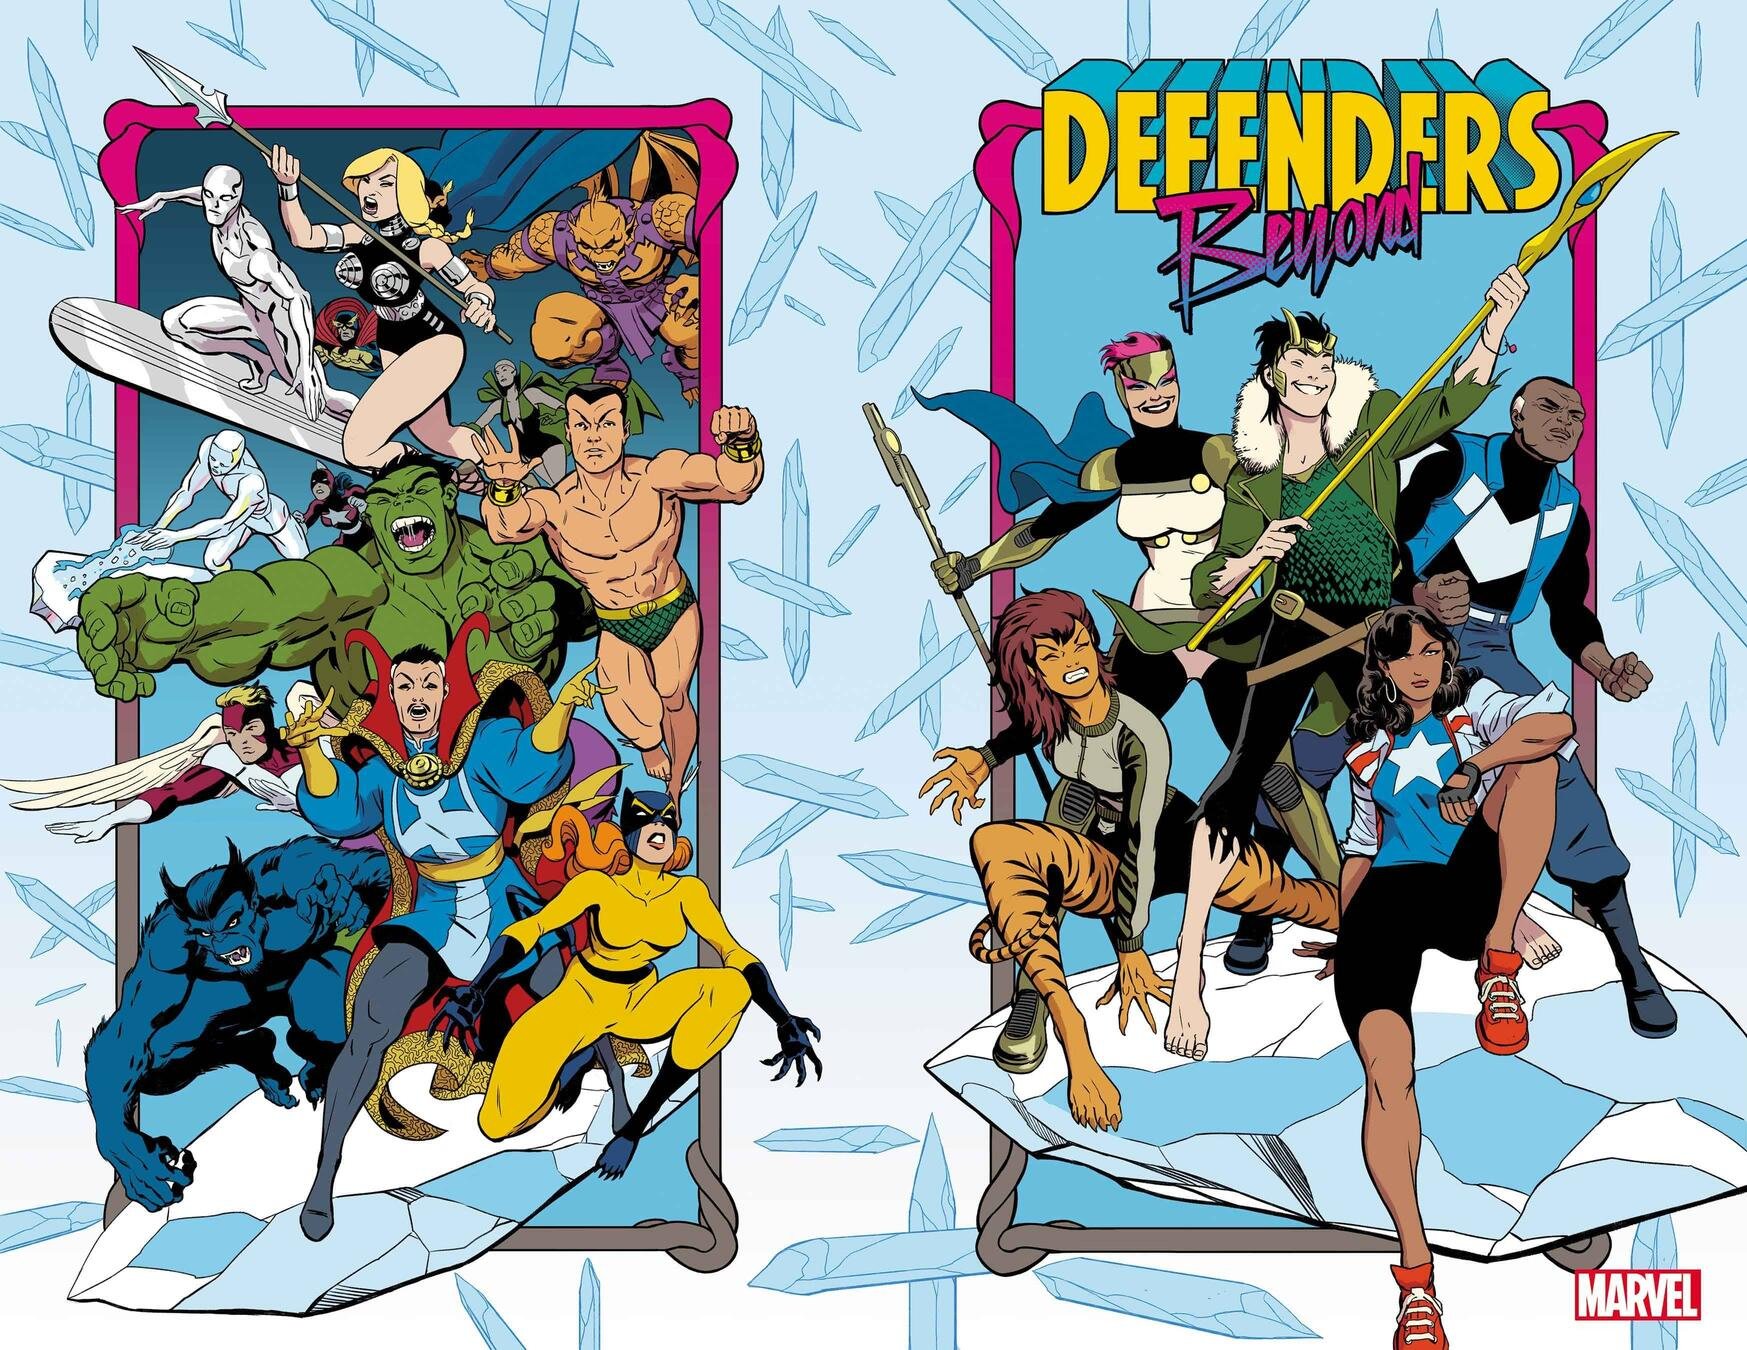 Cover di Defenders: Beyond 1 di Javier Rodriguez, con la nuova formazione che comprende Loki e America Chavez